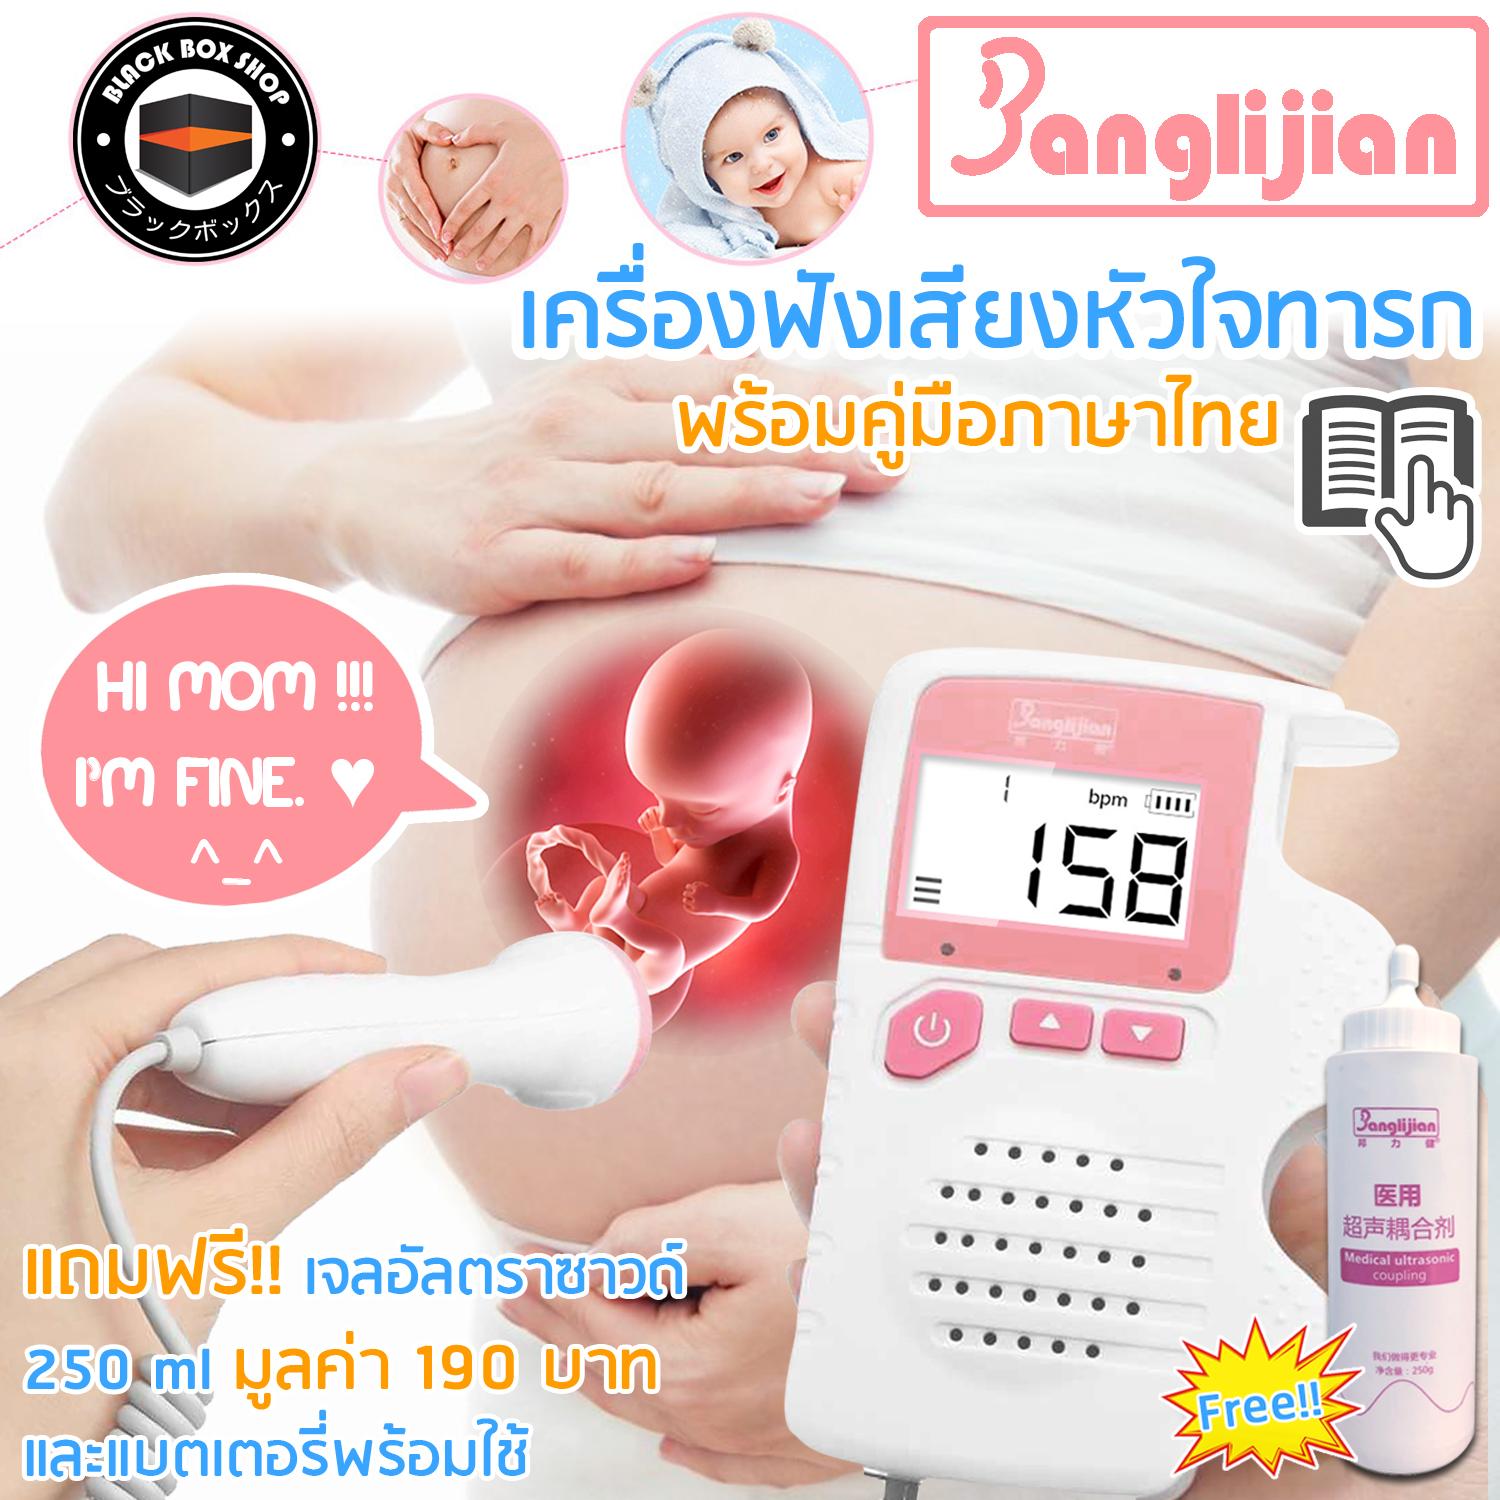 โปรโมชั่น Banglijian เครื่องฟังหัวใจ เครื่องฟังเสียงหัวใจทารก ในครรภ์ เครื่องฟังเสียงอัลตร้าซาวด์ Doppler fetal adoring แถมฟรี!!! เจลอัลตร้าซาวด์ ขนาด 250 ml พร้อมคู่มือภาษาไทย